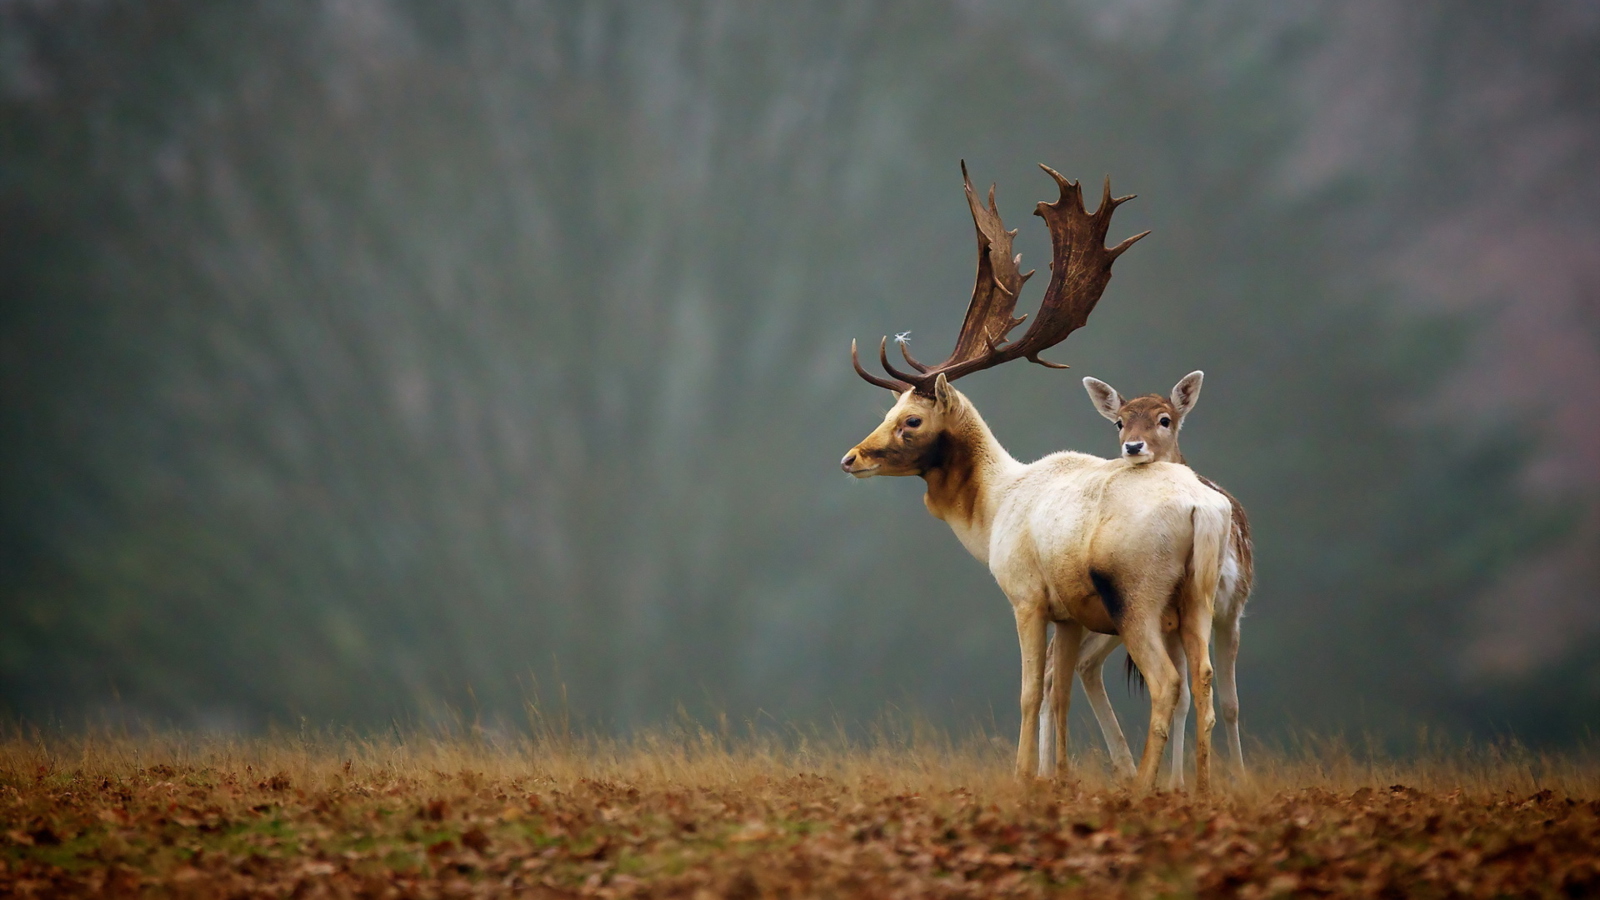 Обои Deer Family 1600x900